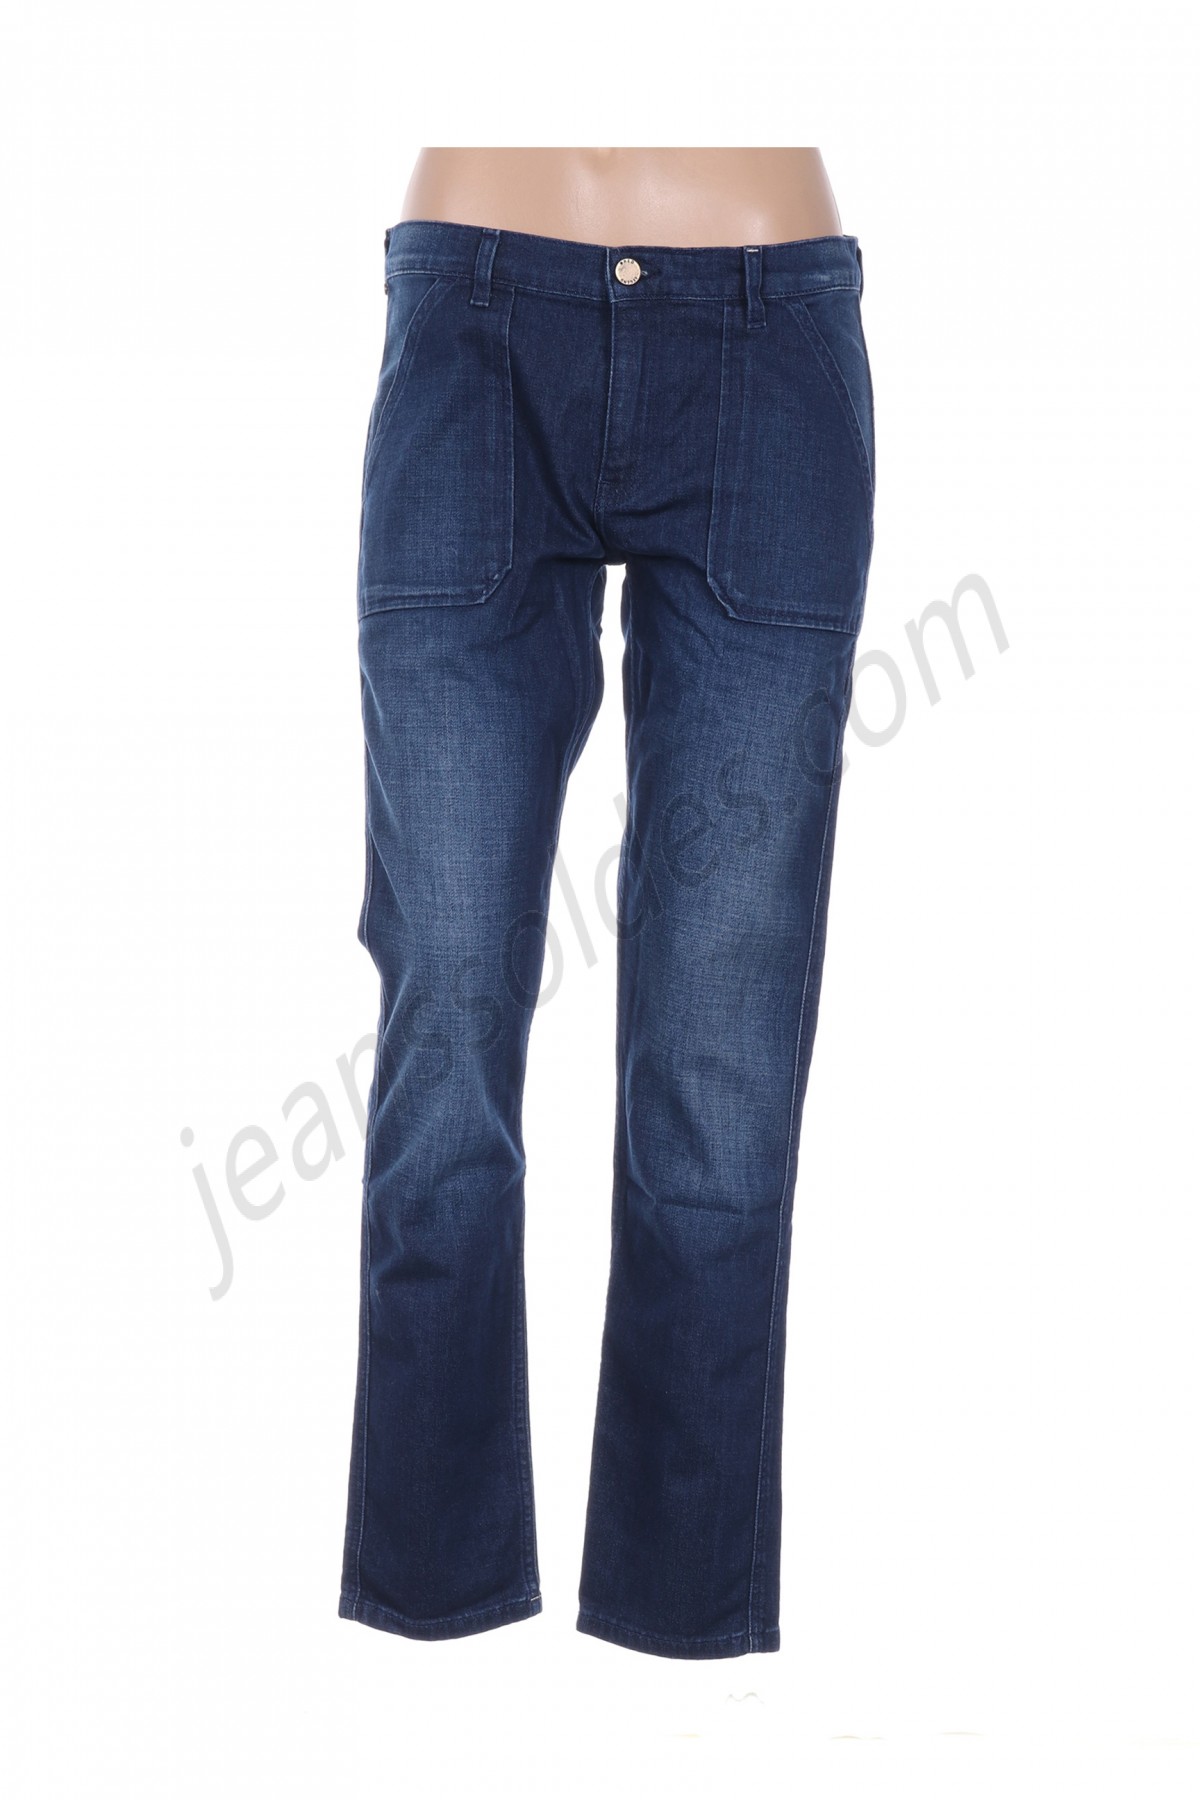 #red/legend-Jeans coupe slim prix d’amis - -0